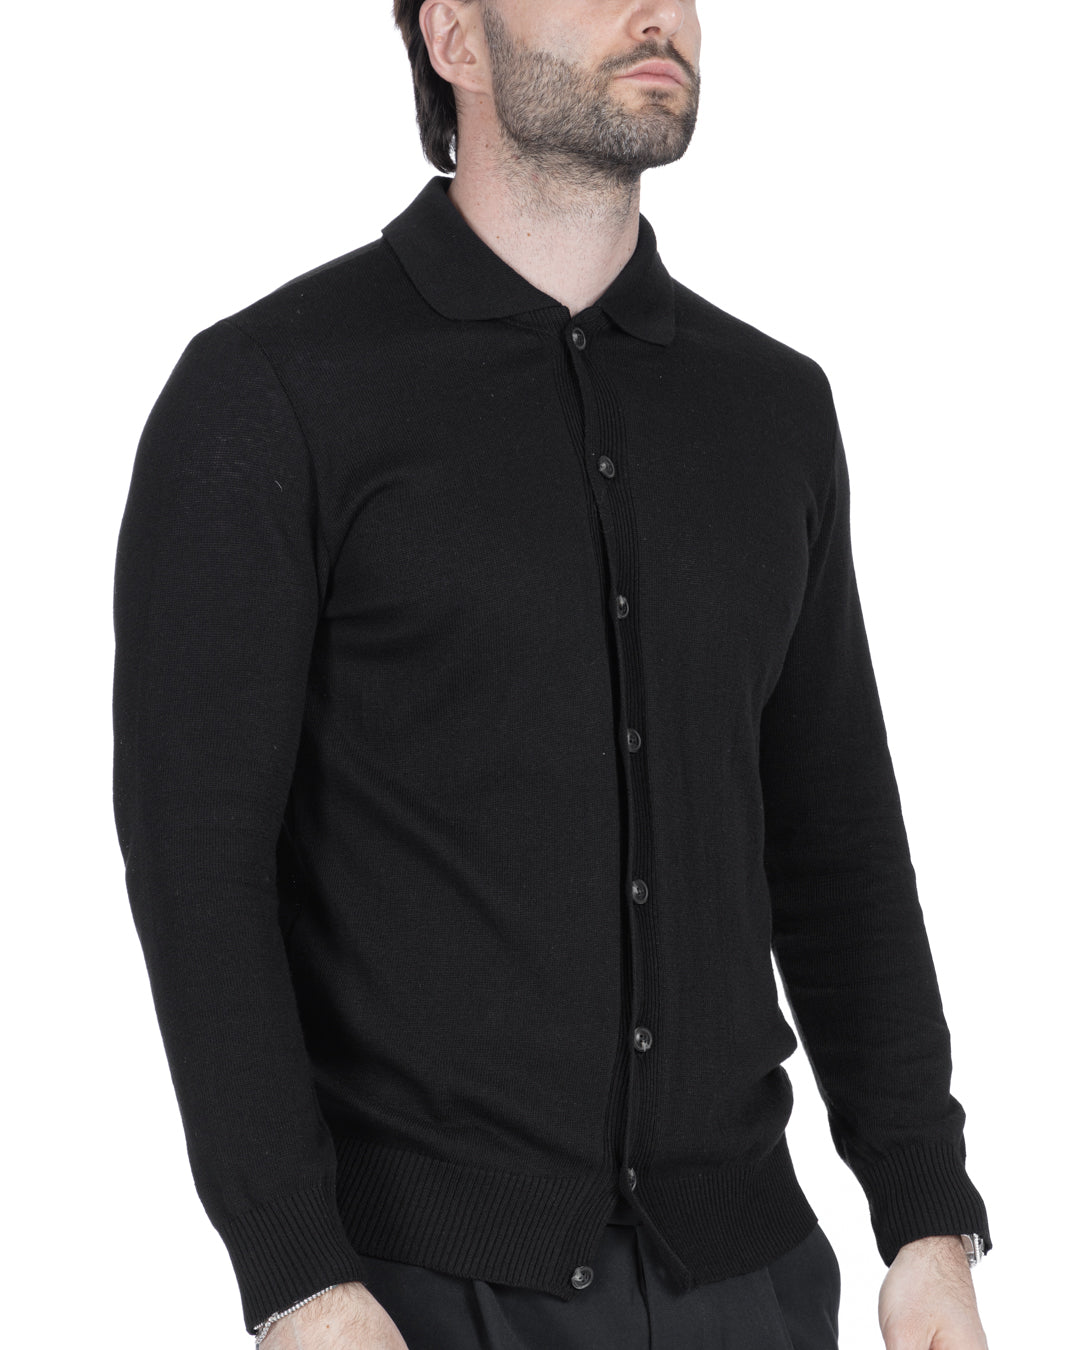 Marlon - black shirt cardigan